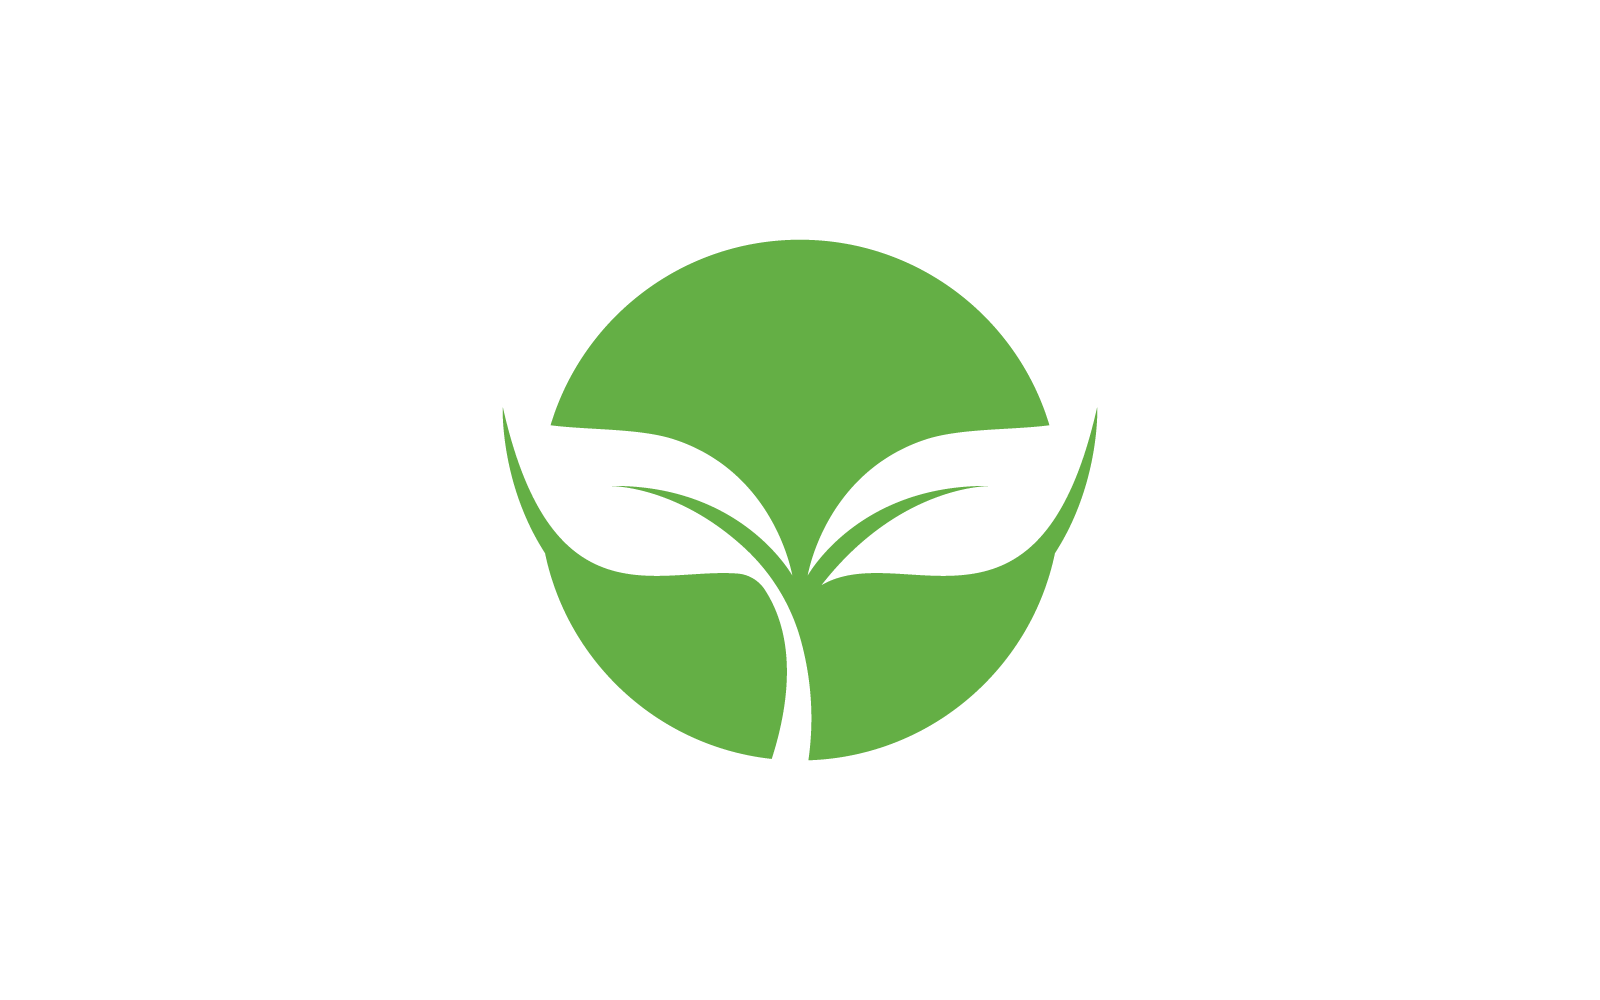 Green leaf logo vector nature flat design